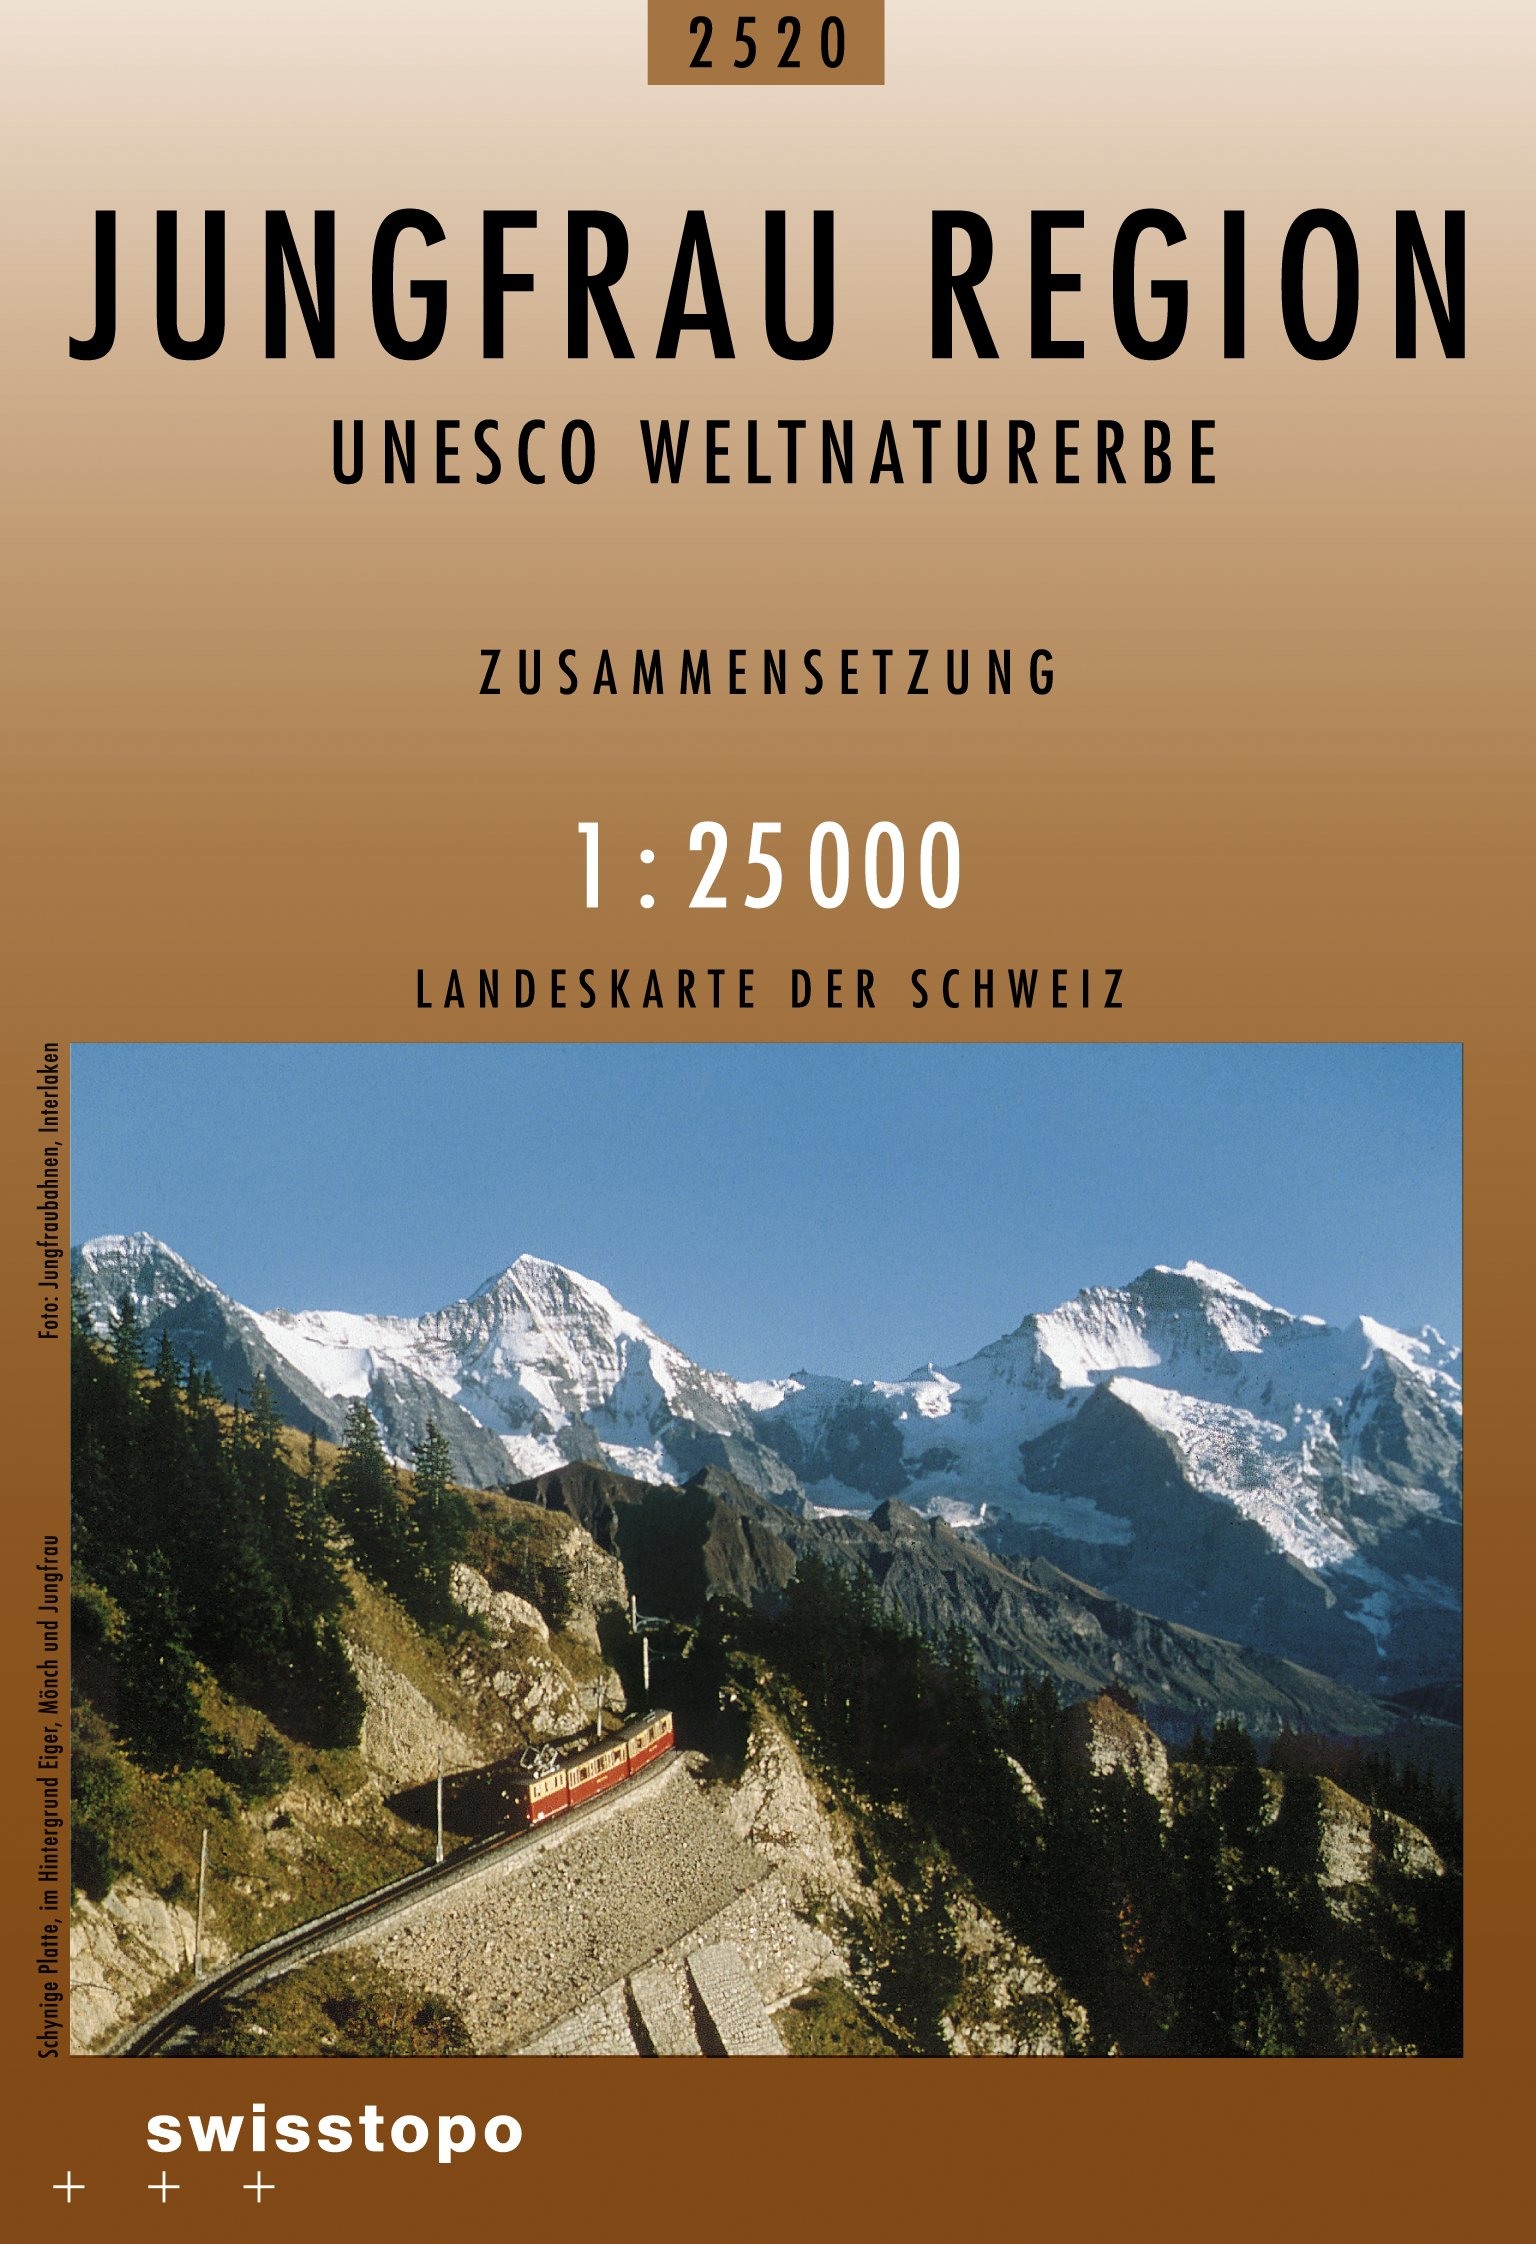 Swisstopo Landeskarte 1 : 25'000 Zusammensetzung Jungfrauregion <br>